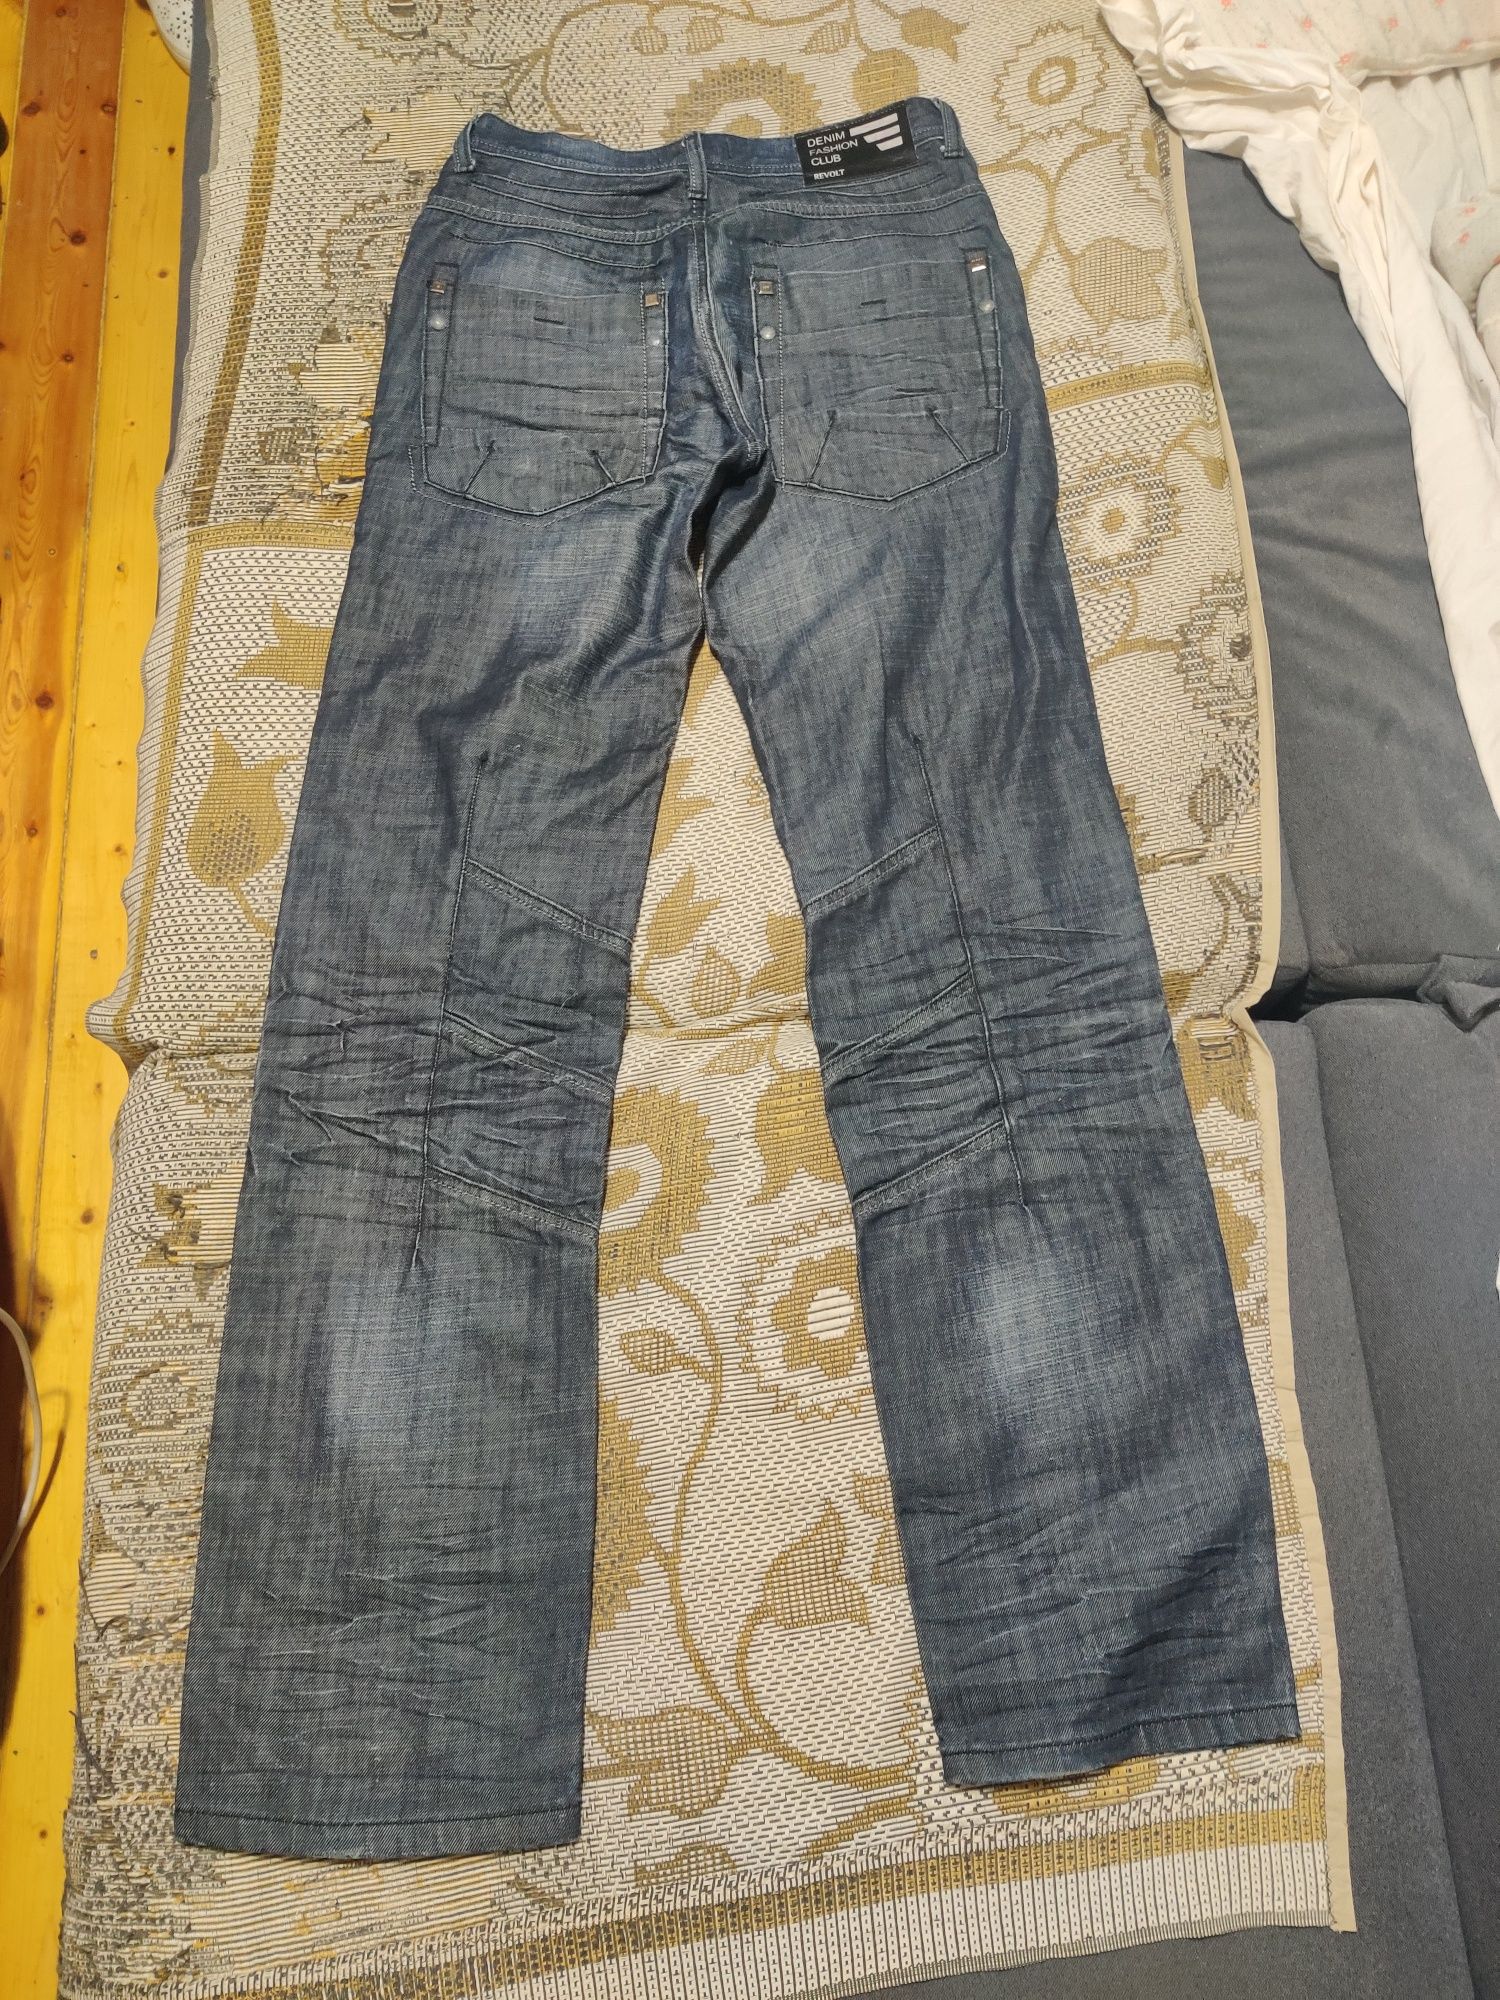 Джинсы мужские Revolt jeans размер 31/34 синие стильные